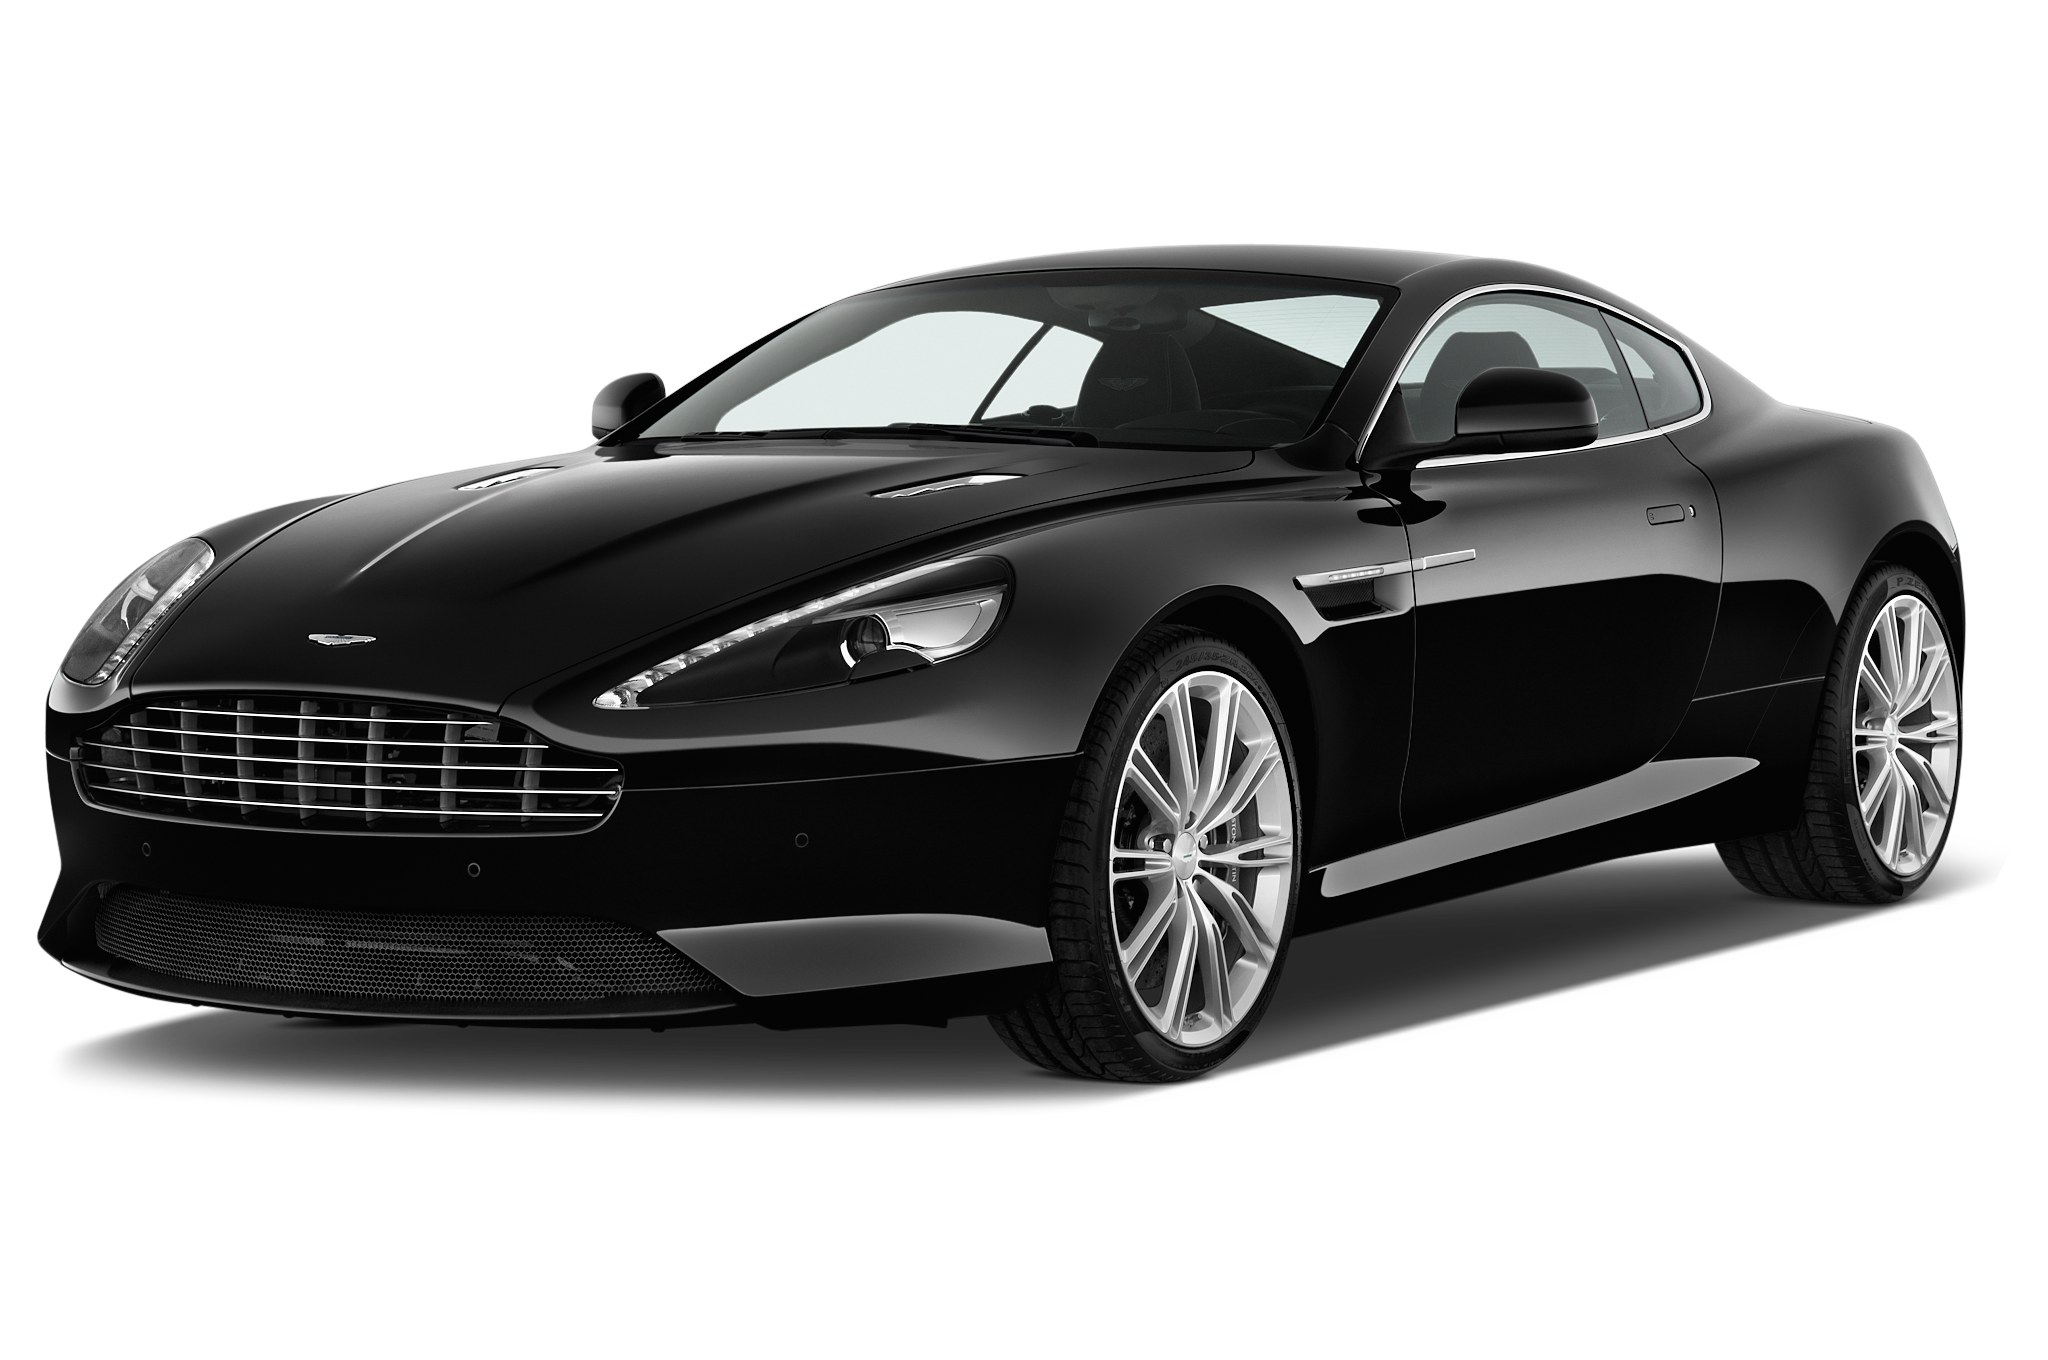 Aston Martin Vanquish Transparent Image